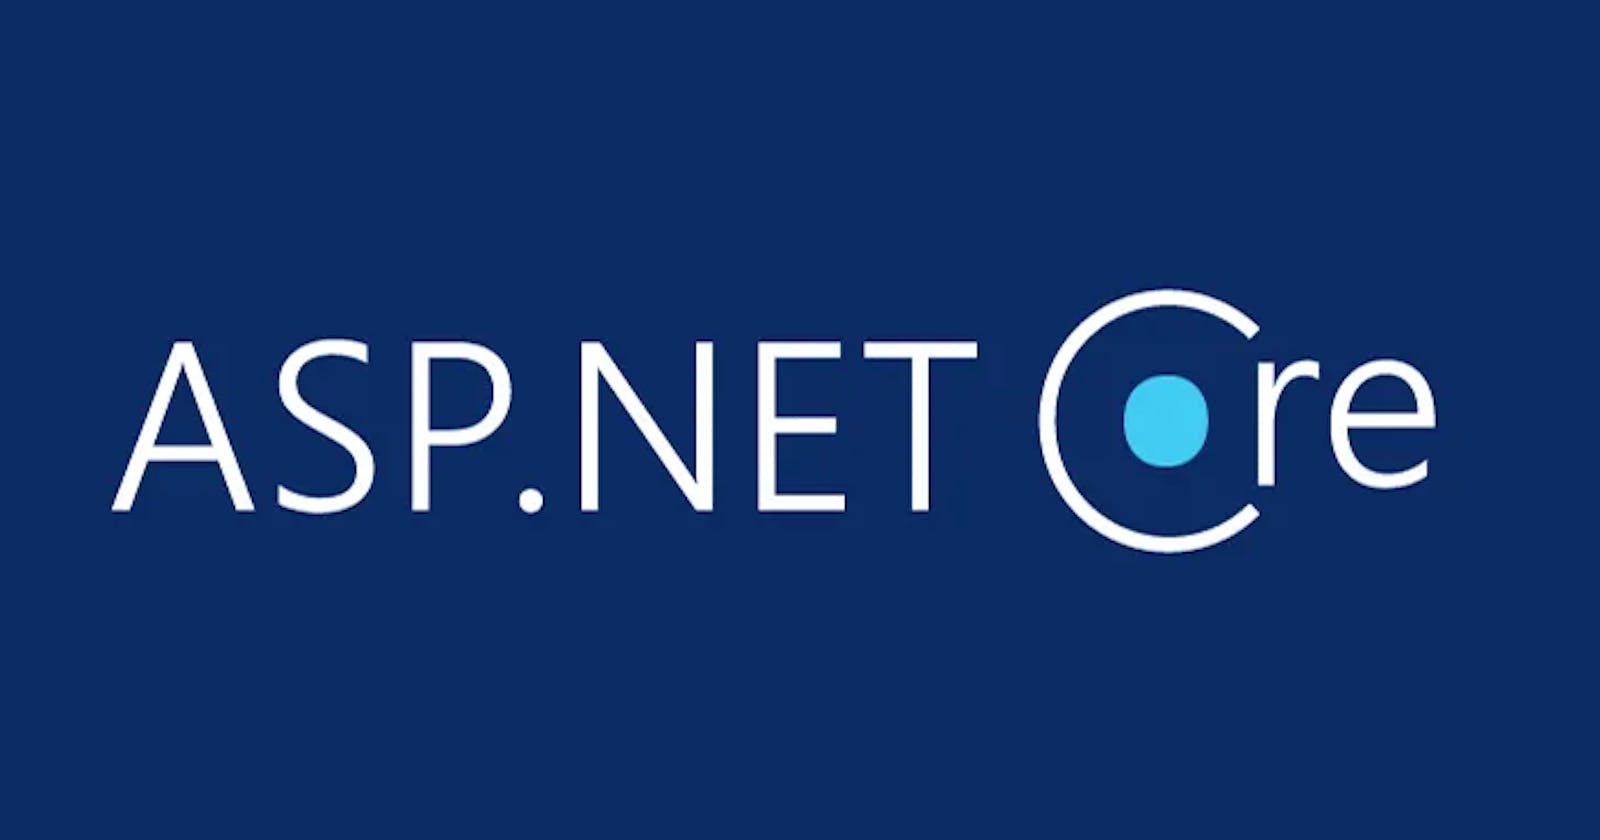 ASP.NET Core: The HttpContext Object